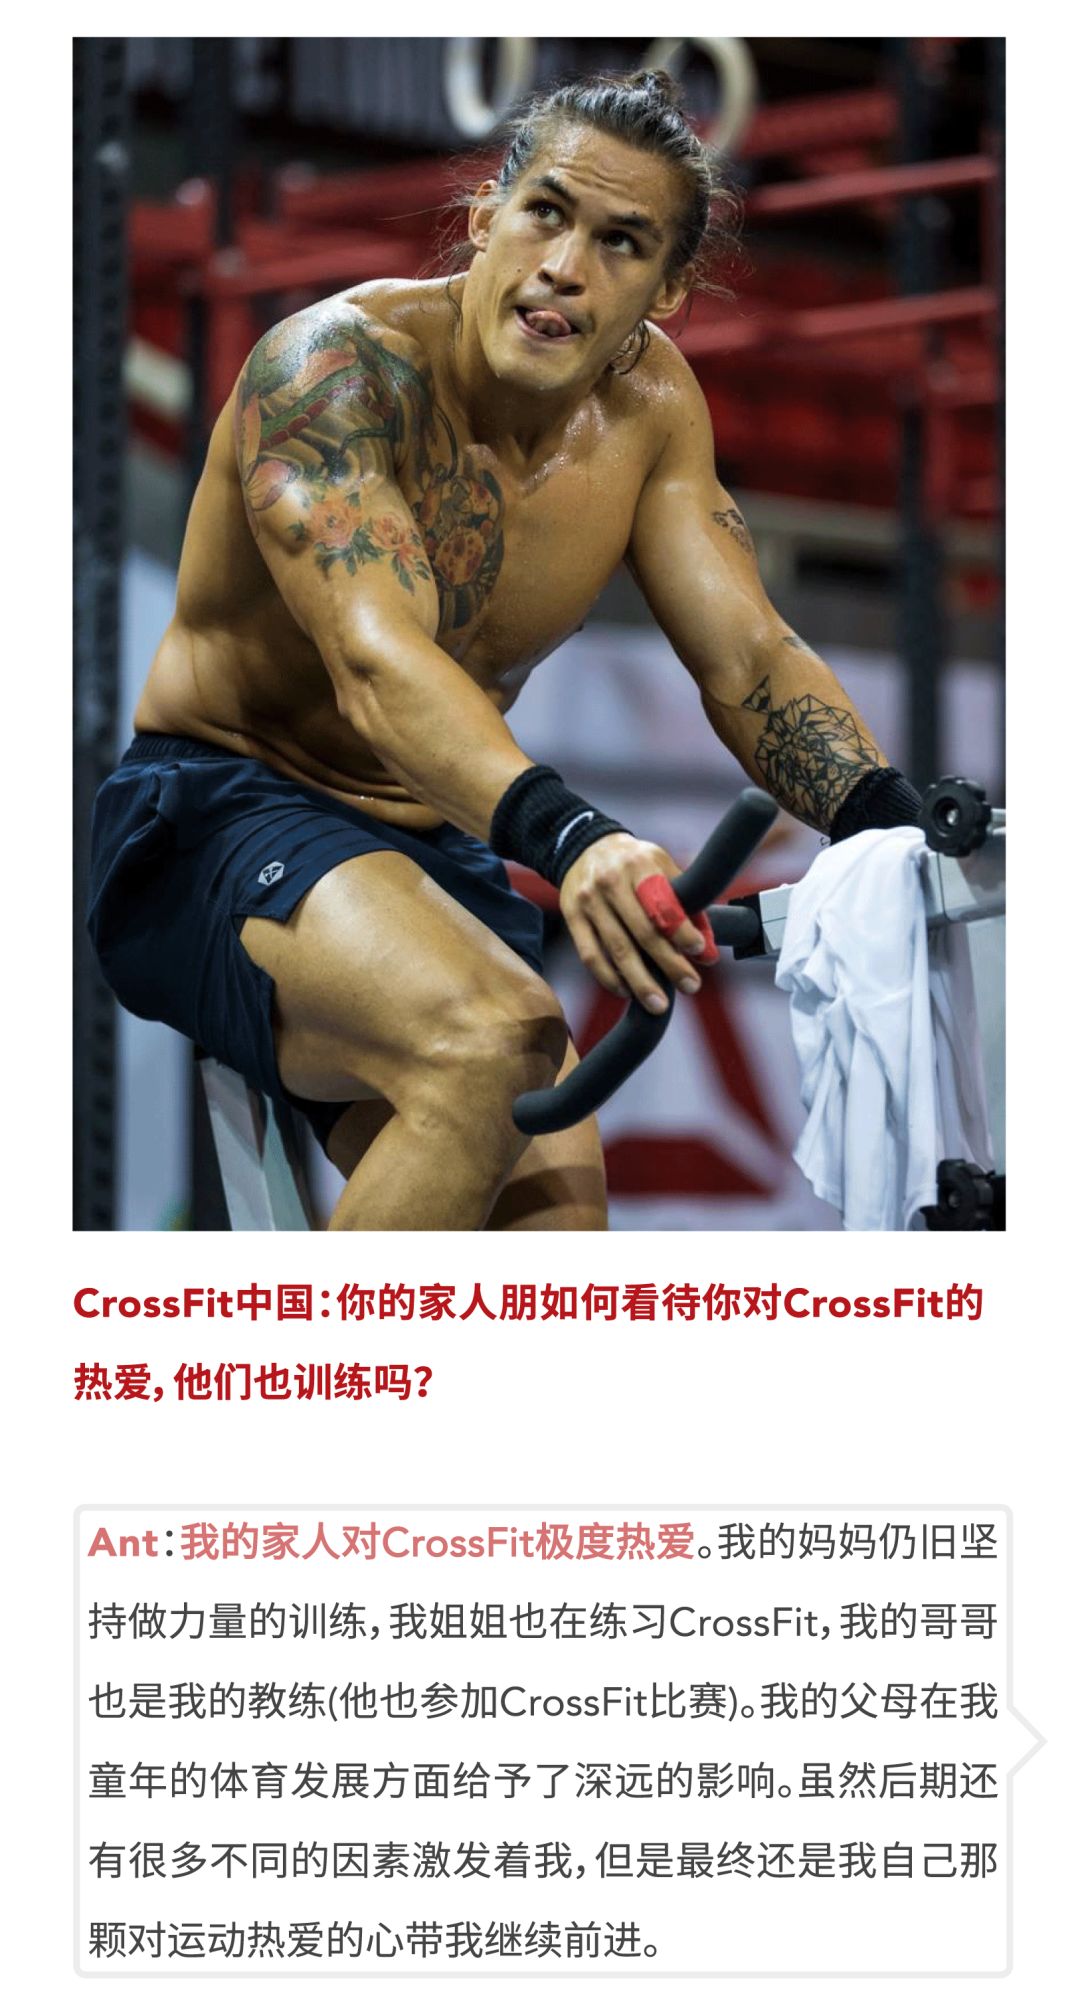 2019 CrossFit Open中国区冠军访谈